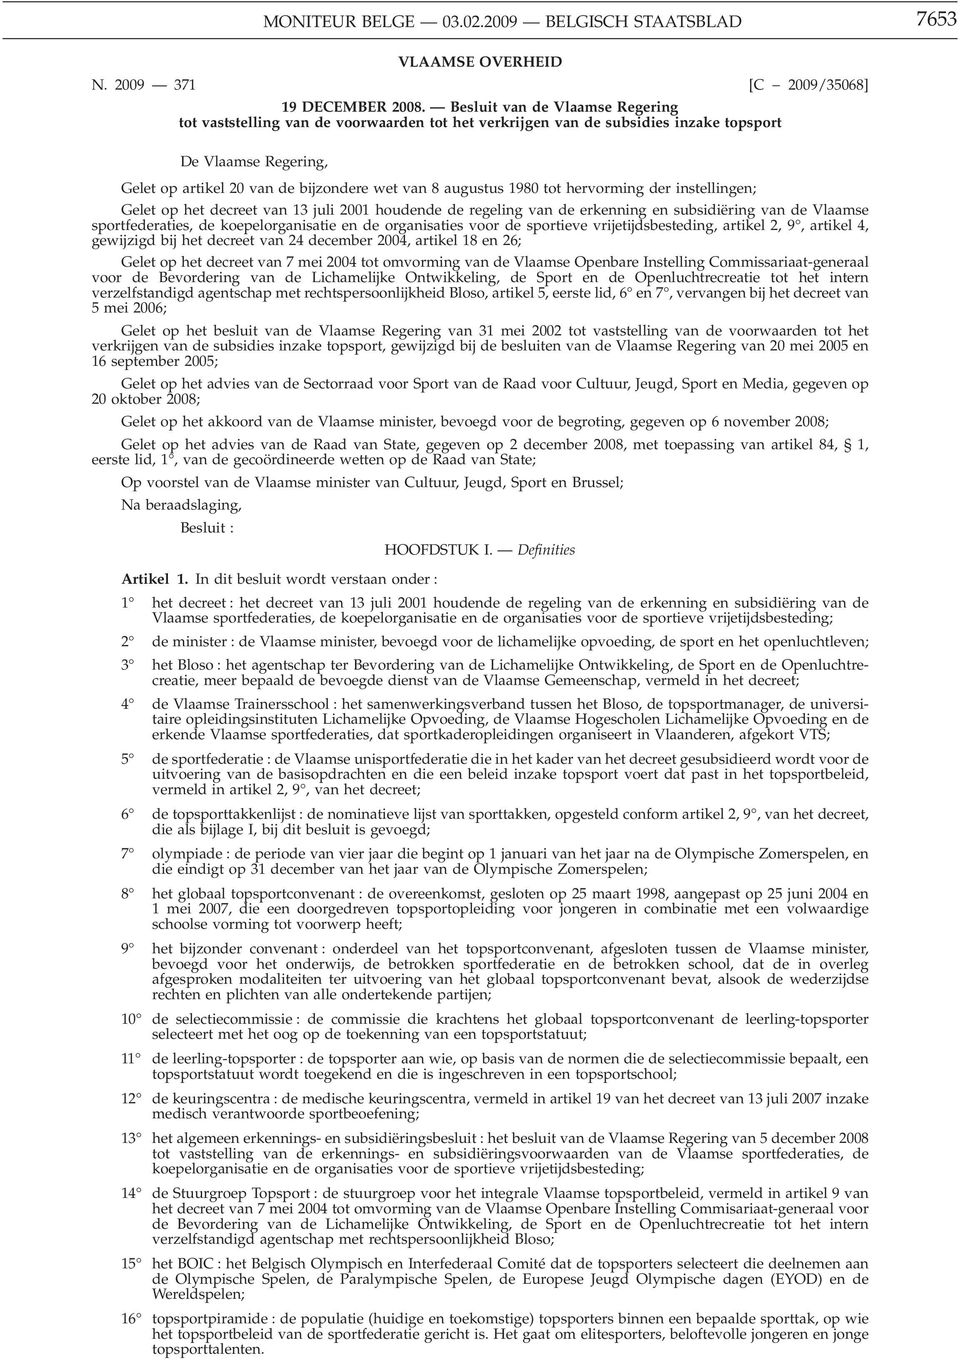 1980 tot hervorming der instellingen; Gelet op het decreet van 13 juli 2001 houdende de regeling van de erkenning en subsidiëring van de Vlaamse sportfederaties, de koepelorganisatie en de